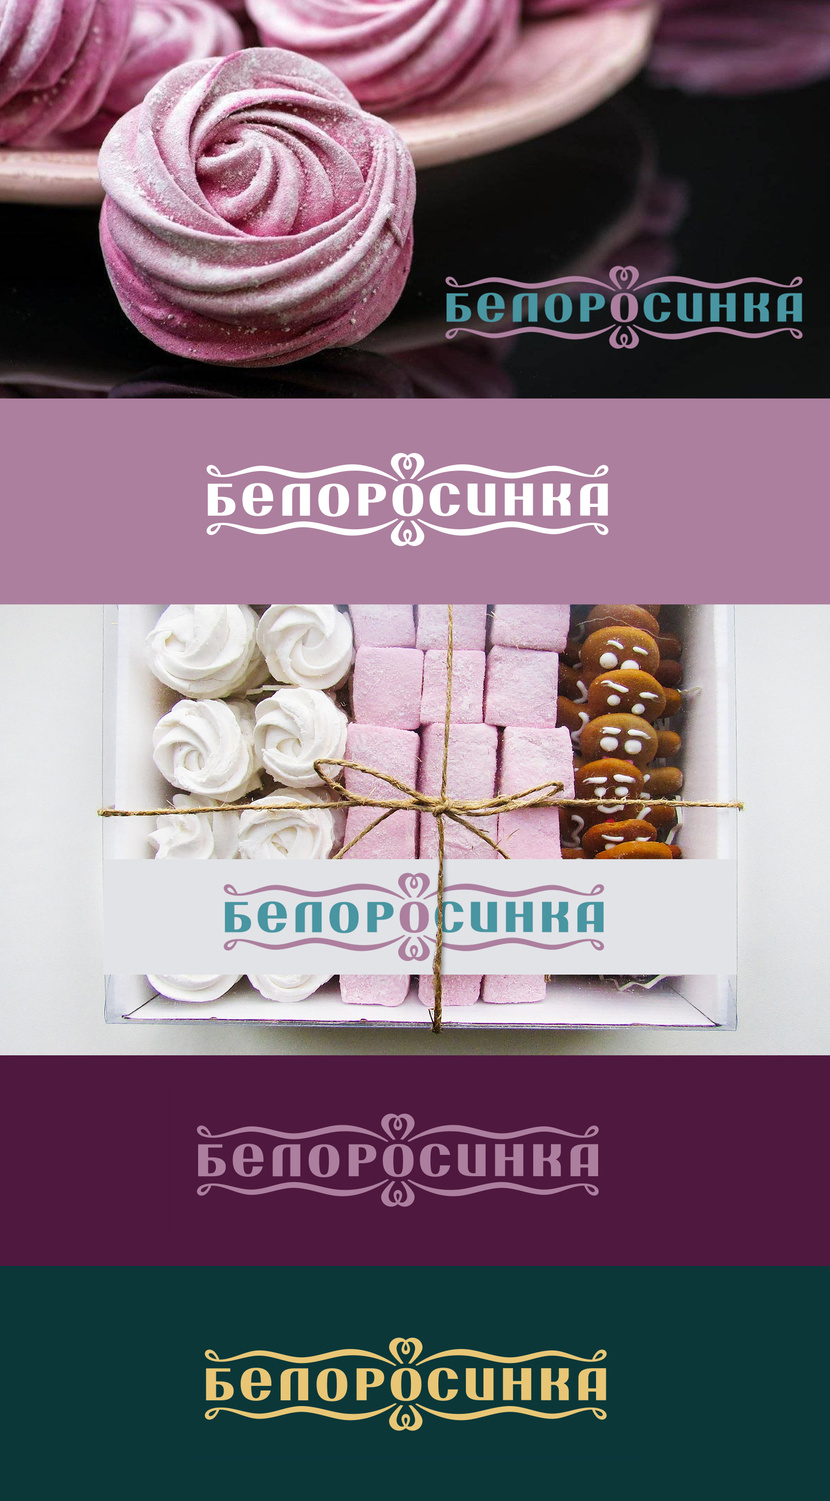 Логотип для кондитерских изделий торговой марки БЕЛОРОСИНКА